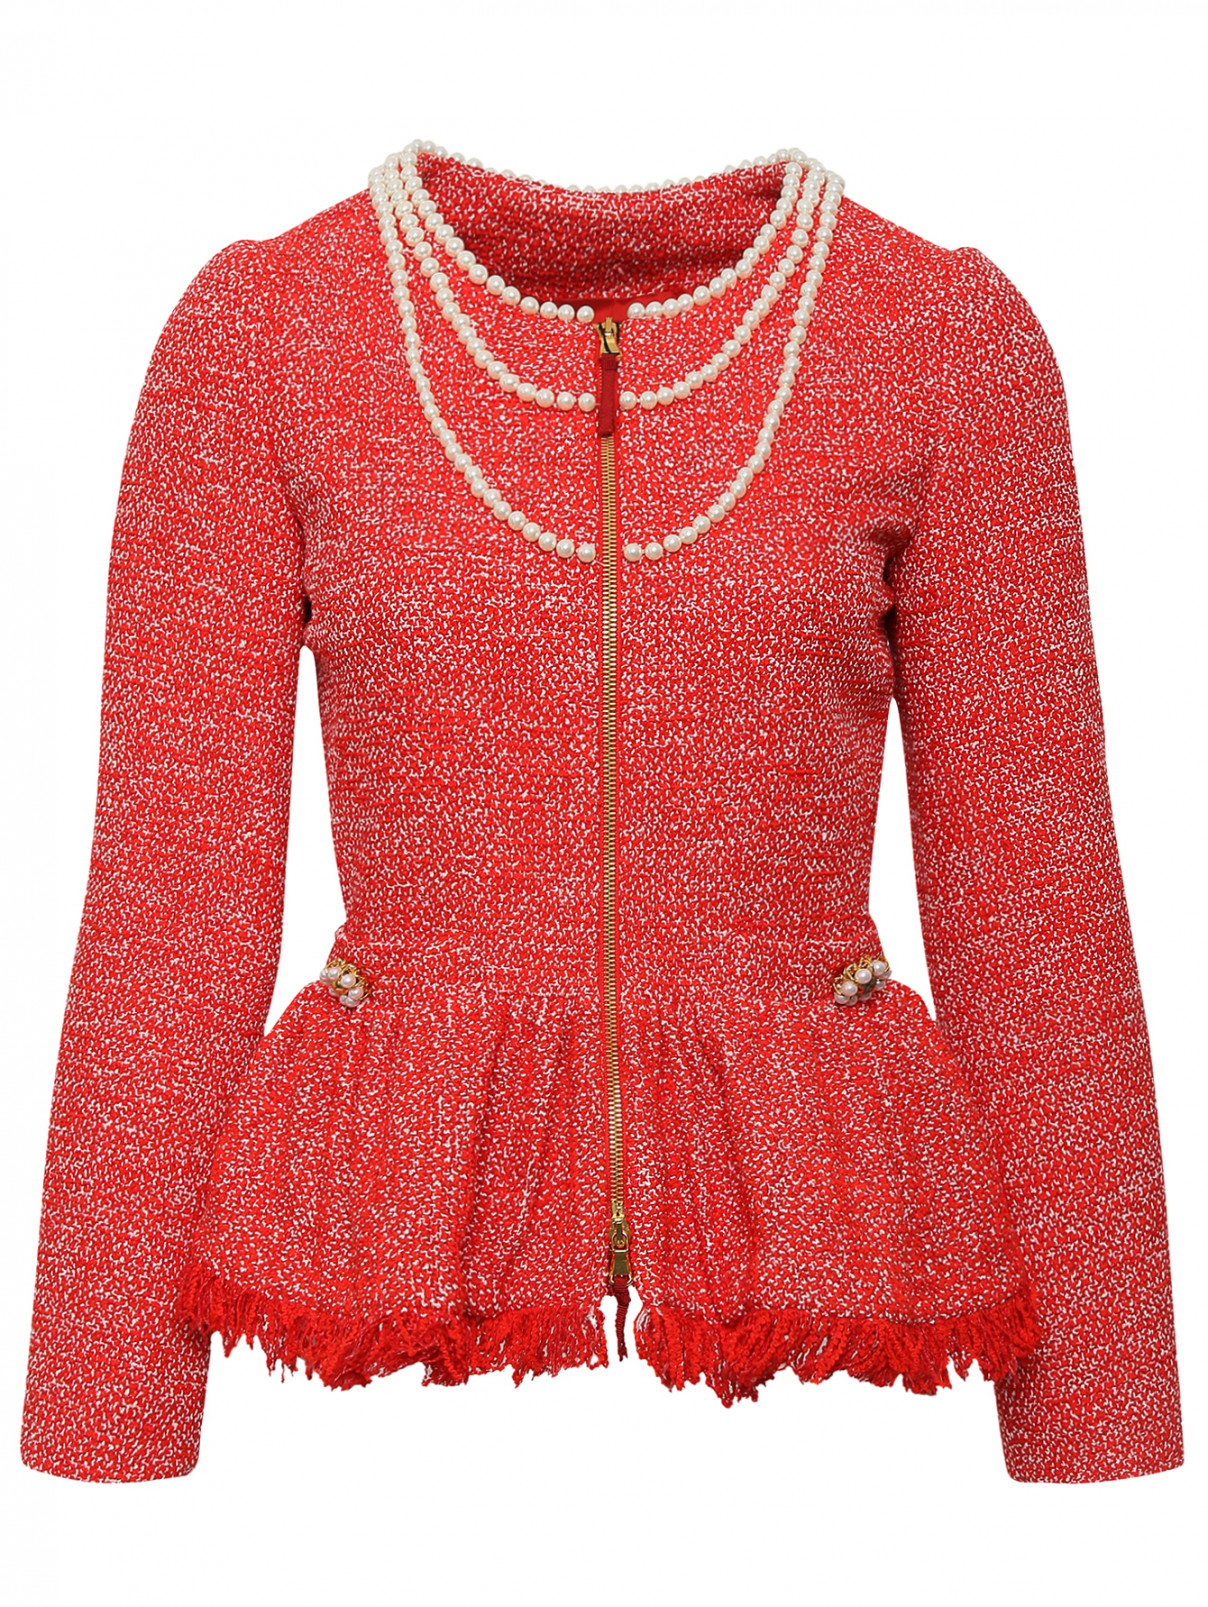 Жакет на молнии декорированный бусинами Moschino  –  Общий вид  – Цвет:  Красный